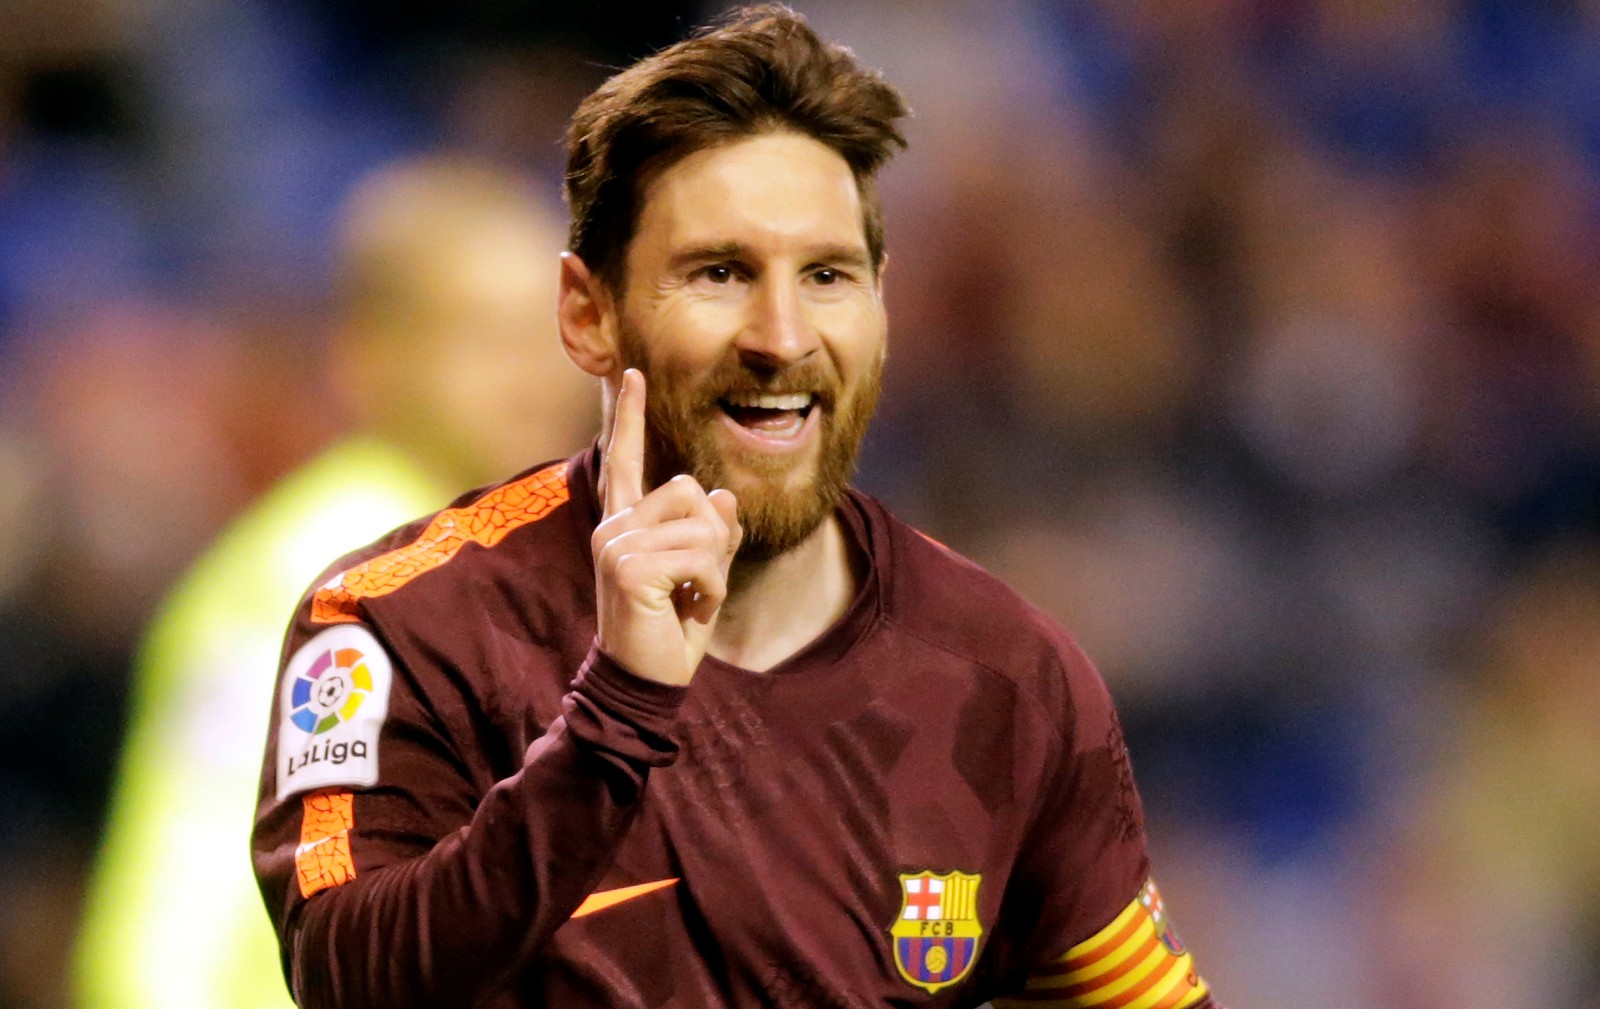 Será? Jornal espanhol aponta que Messi chegou ao seu milésimo gol